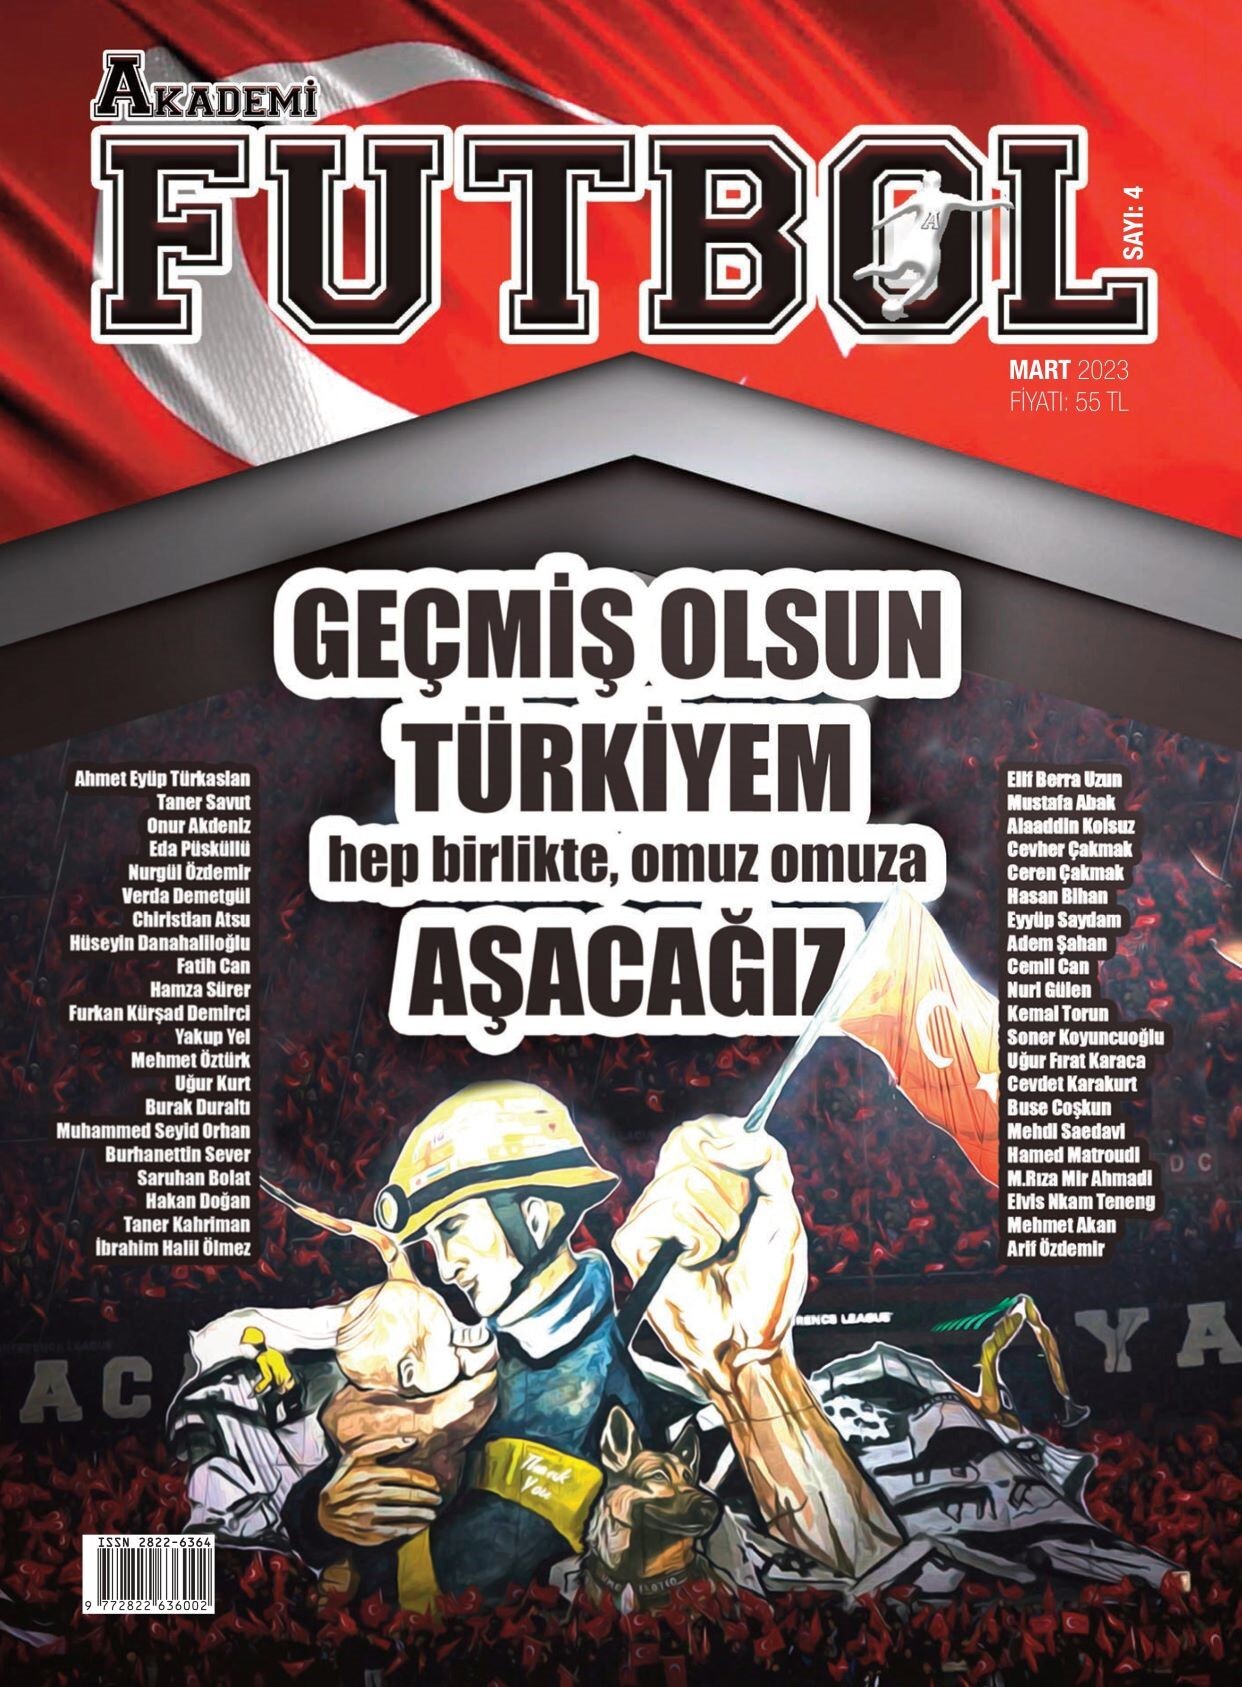 Akademi Futbol Dergisi, Dergilik'te yerini aldı